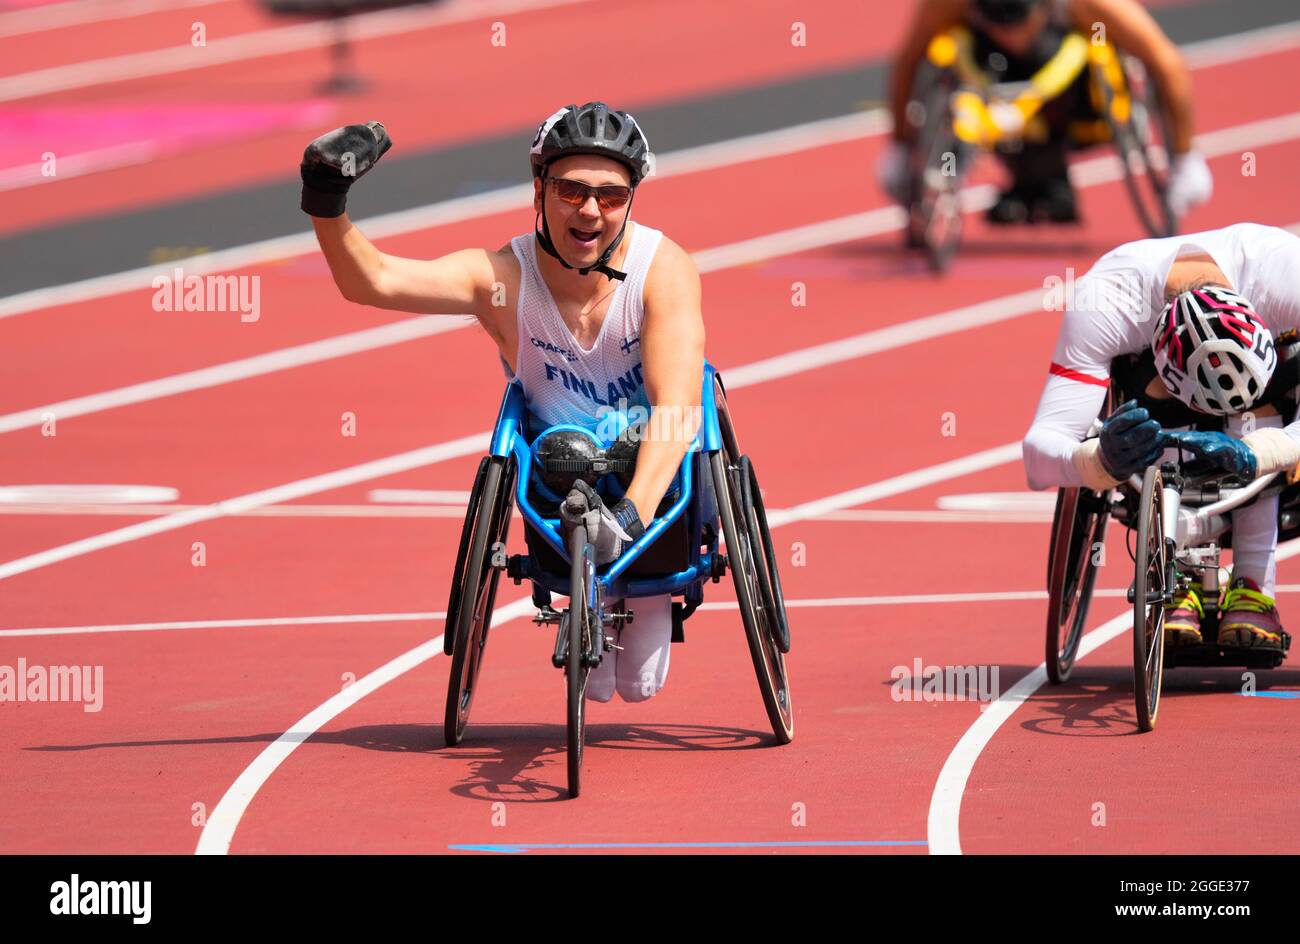 Toni Piispanen de Finlandia ganó 200m durante el atletismo en el Tokyo  Paralympics, Tokyo Olympic Stadium, Tokio, Japón, el 31 de agosto de  2021.(Imagen de crédito: &copy; Ulrik Pedersen/CSM/Sipa USA Fotografía de